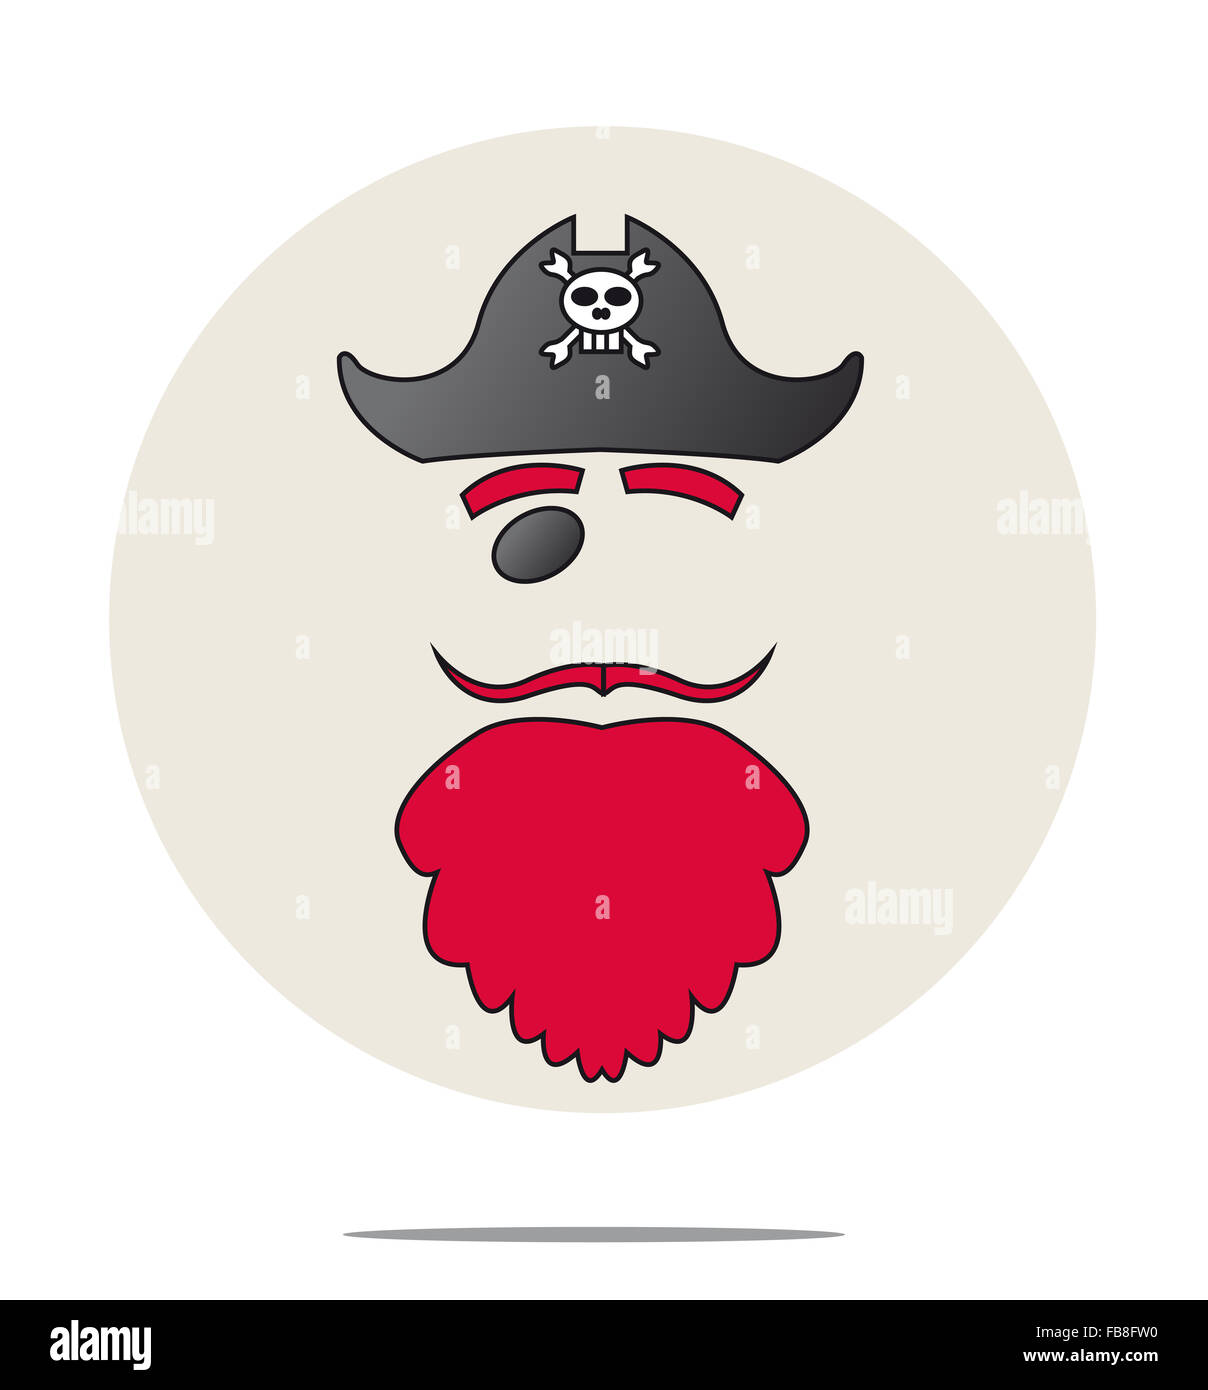 Abbildung eines Piraten mit roten Bart Stockfoto